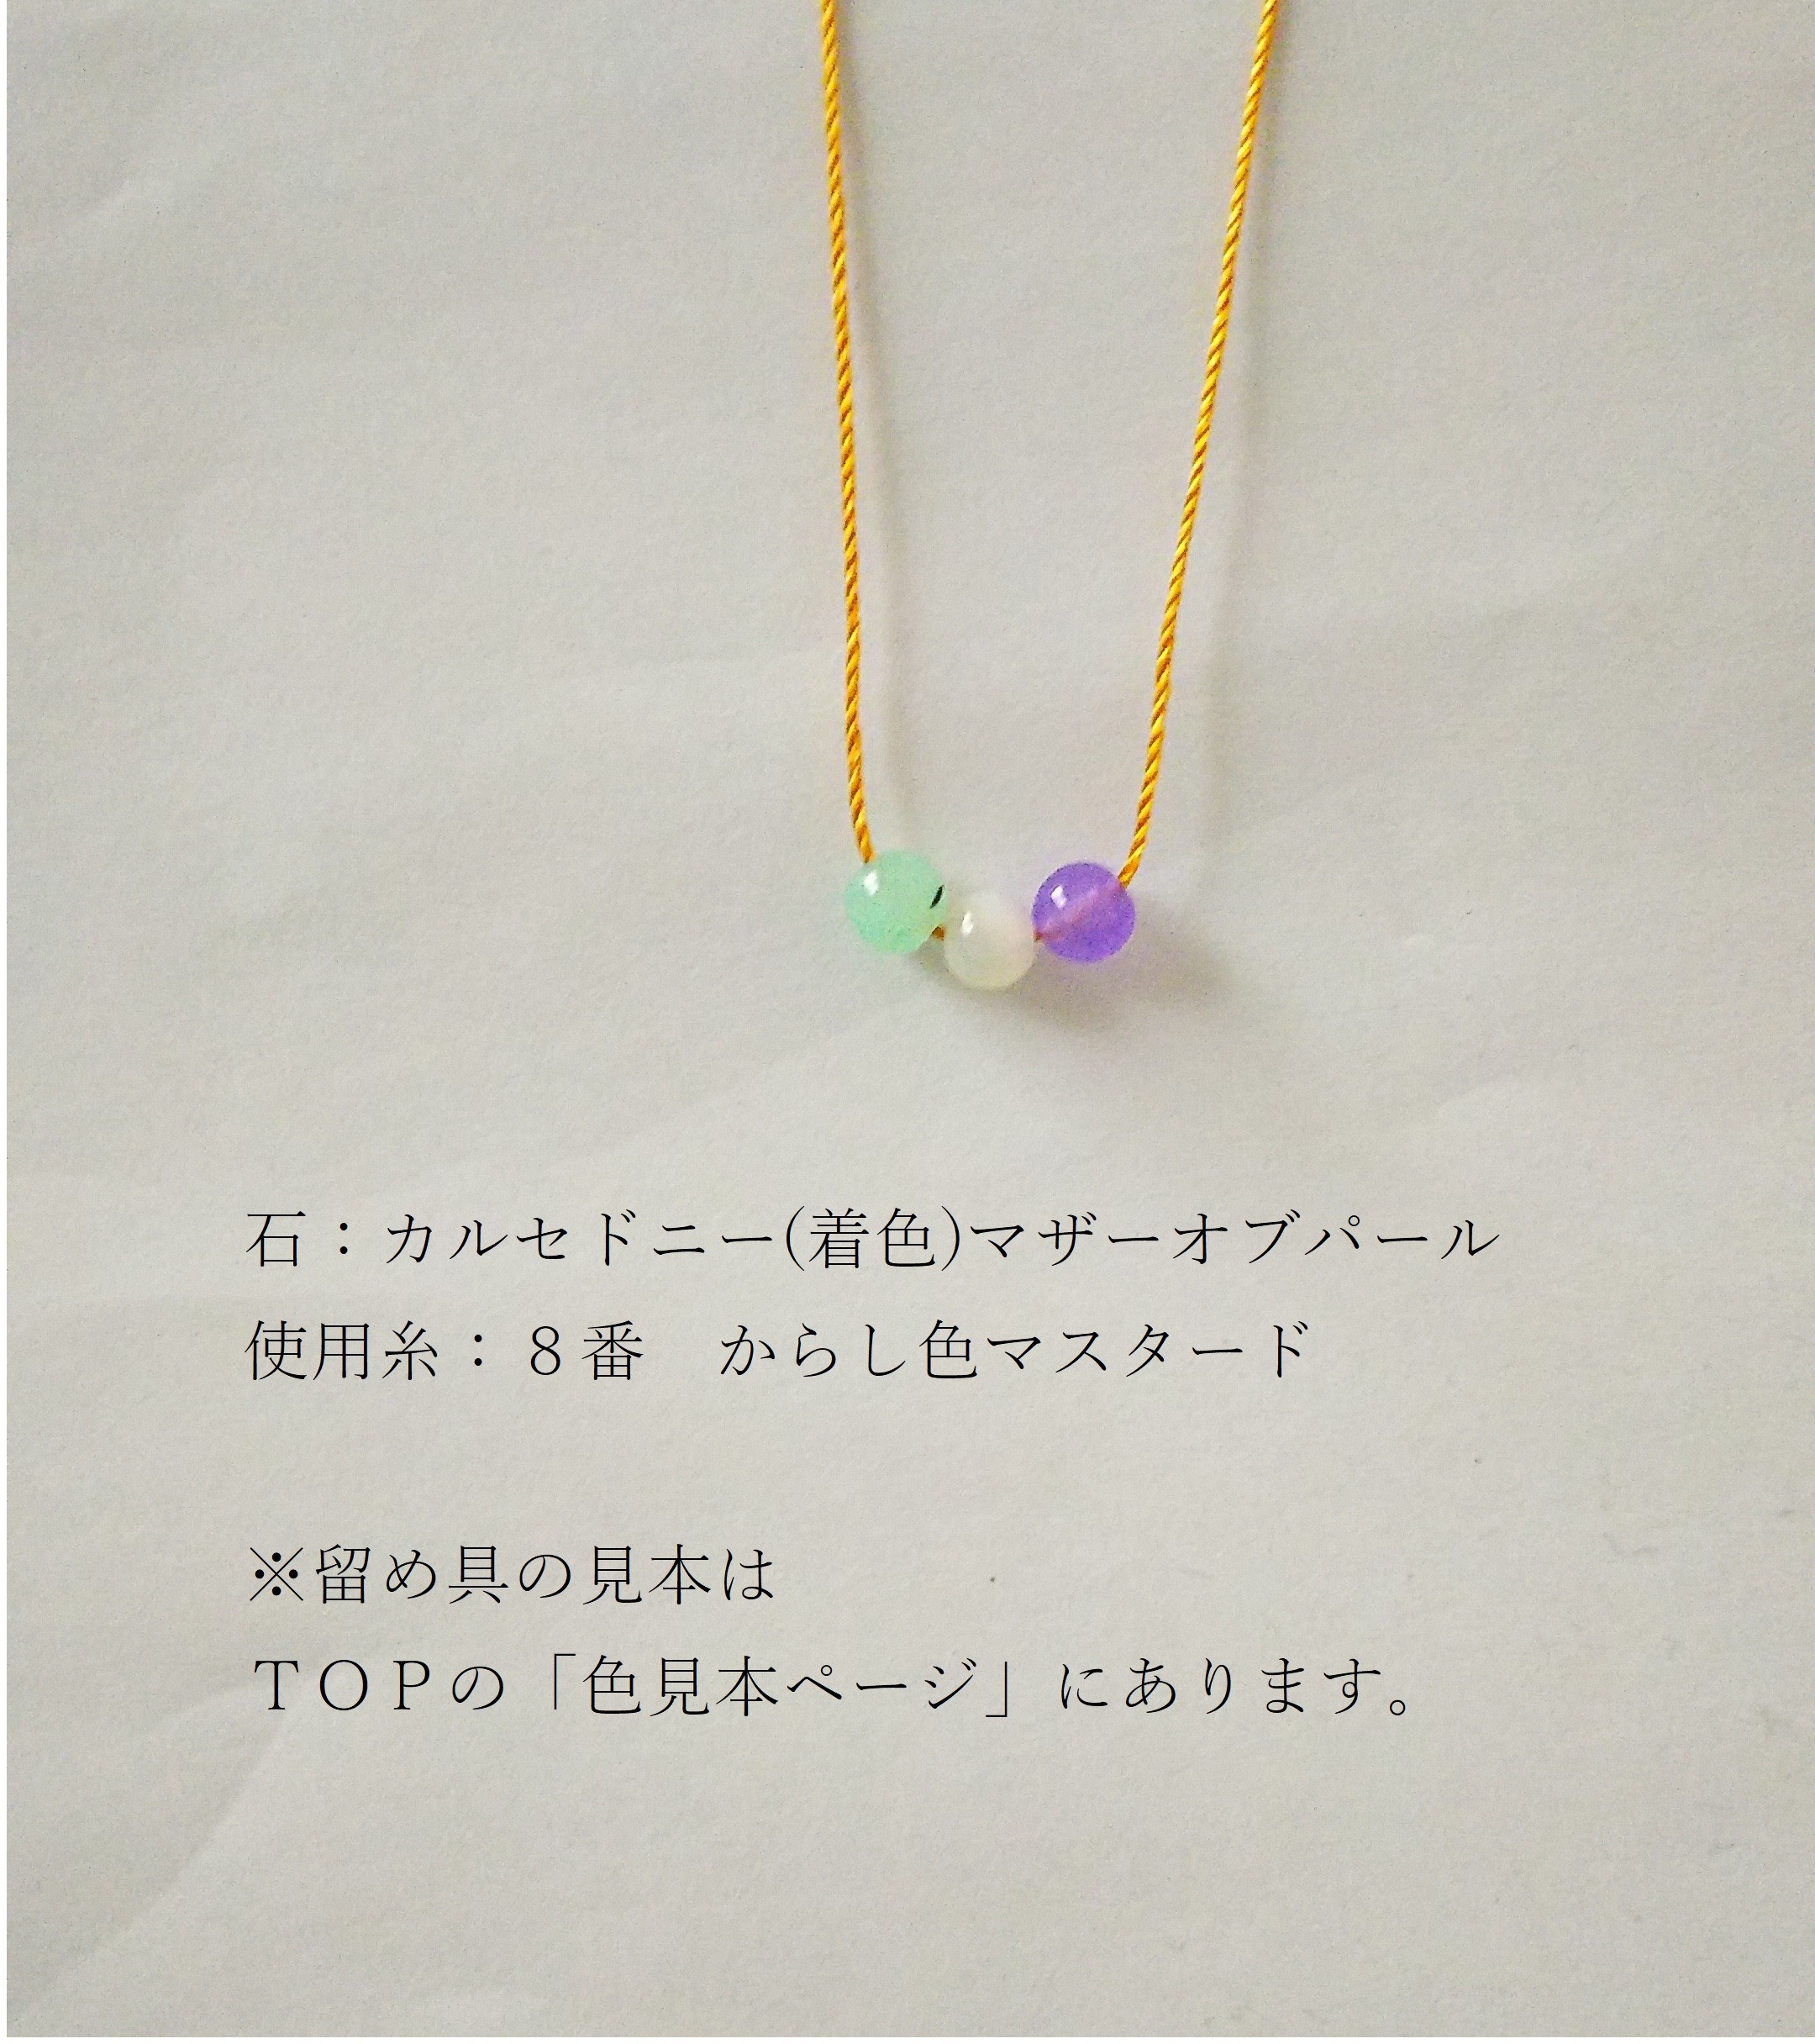 14 お団子 紫 肌にやさしい絹糸のネックレス Iichi ハンドメイド クラフト作品 手仕事品の通販